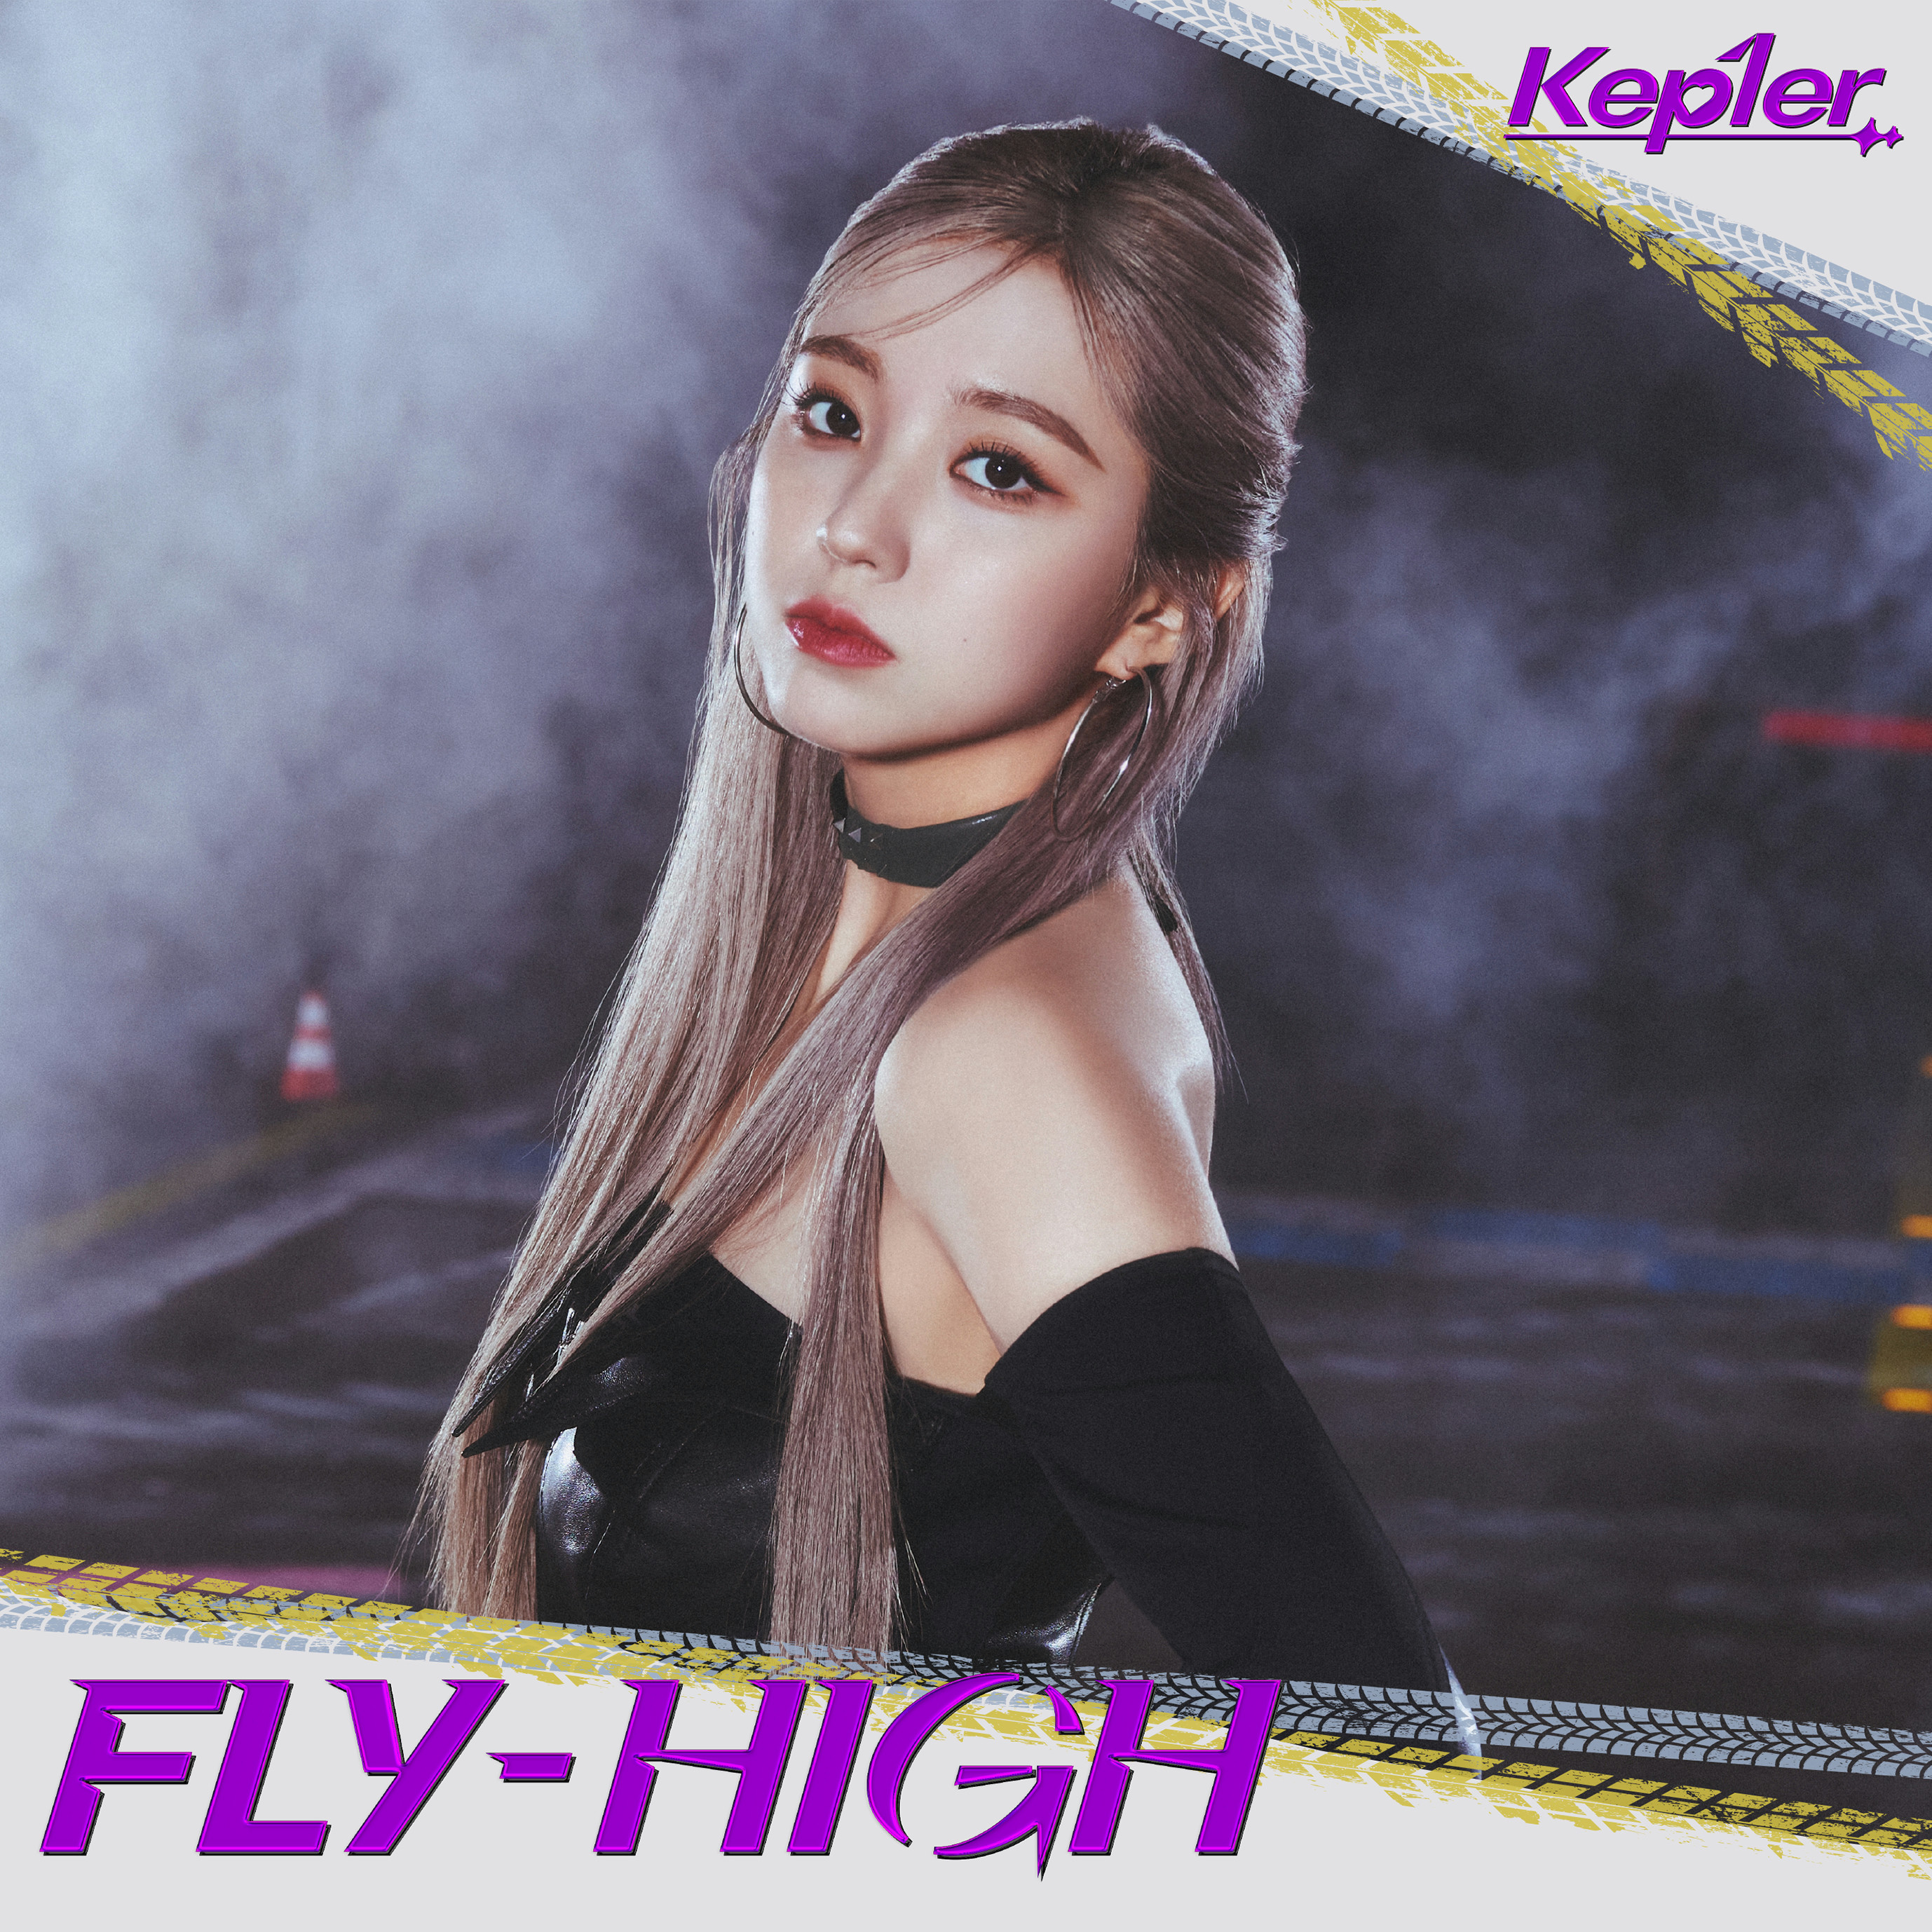 FLY-HIGH>【Kep1ian盤 (CHAEHYUN ver.)】 - 【Kep1ian Japan】Kep1er